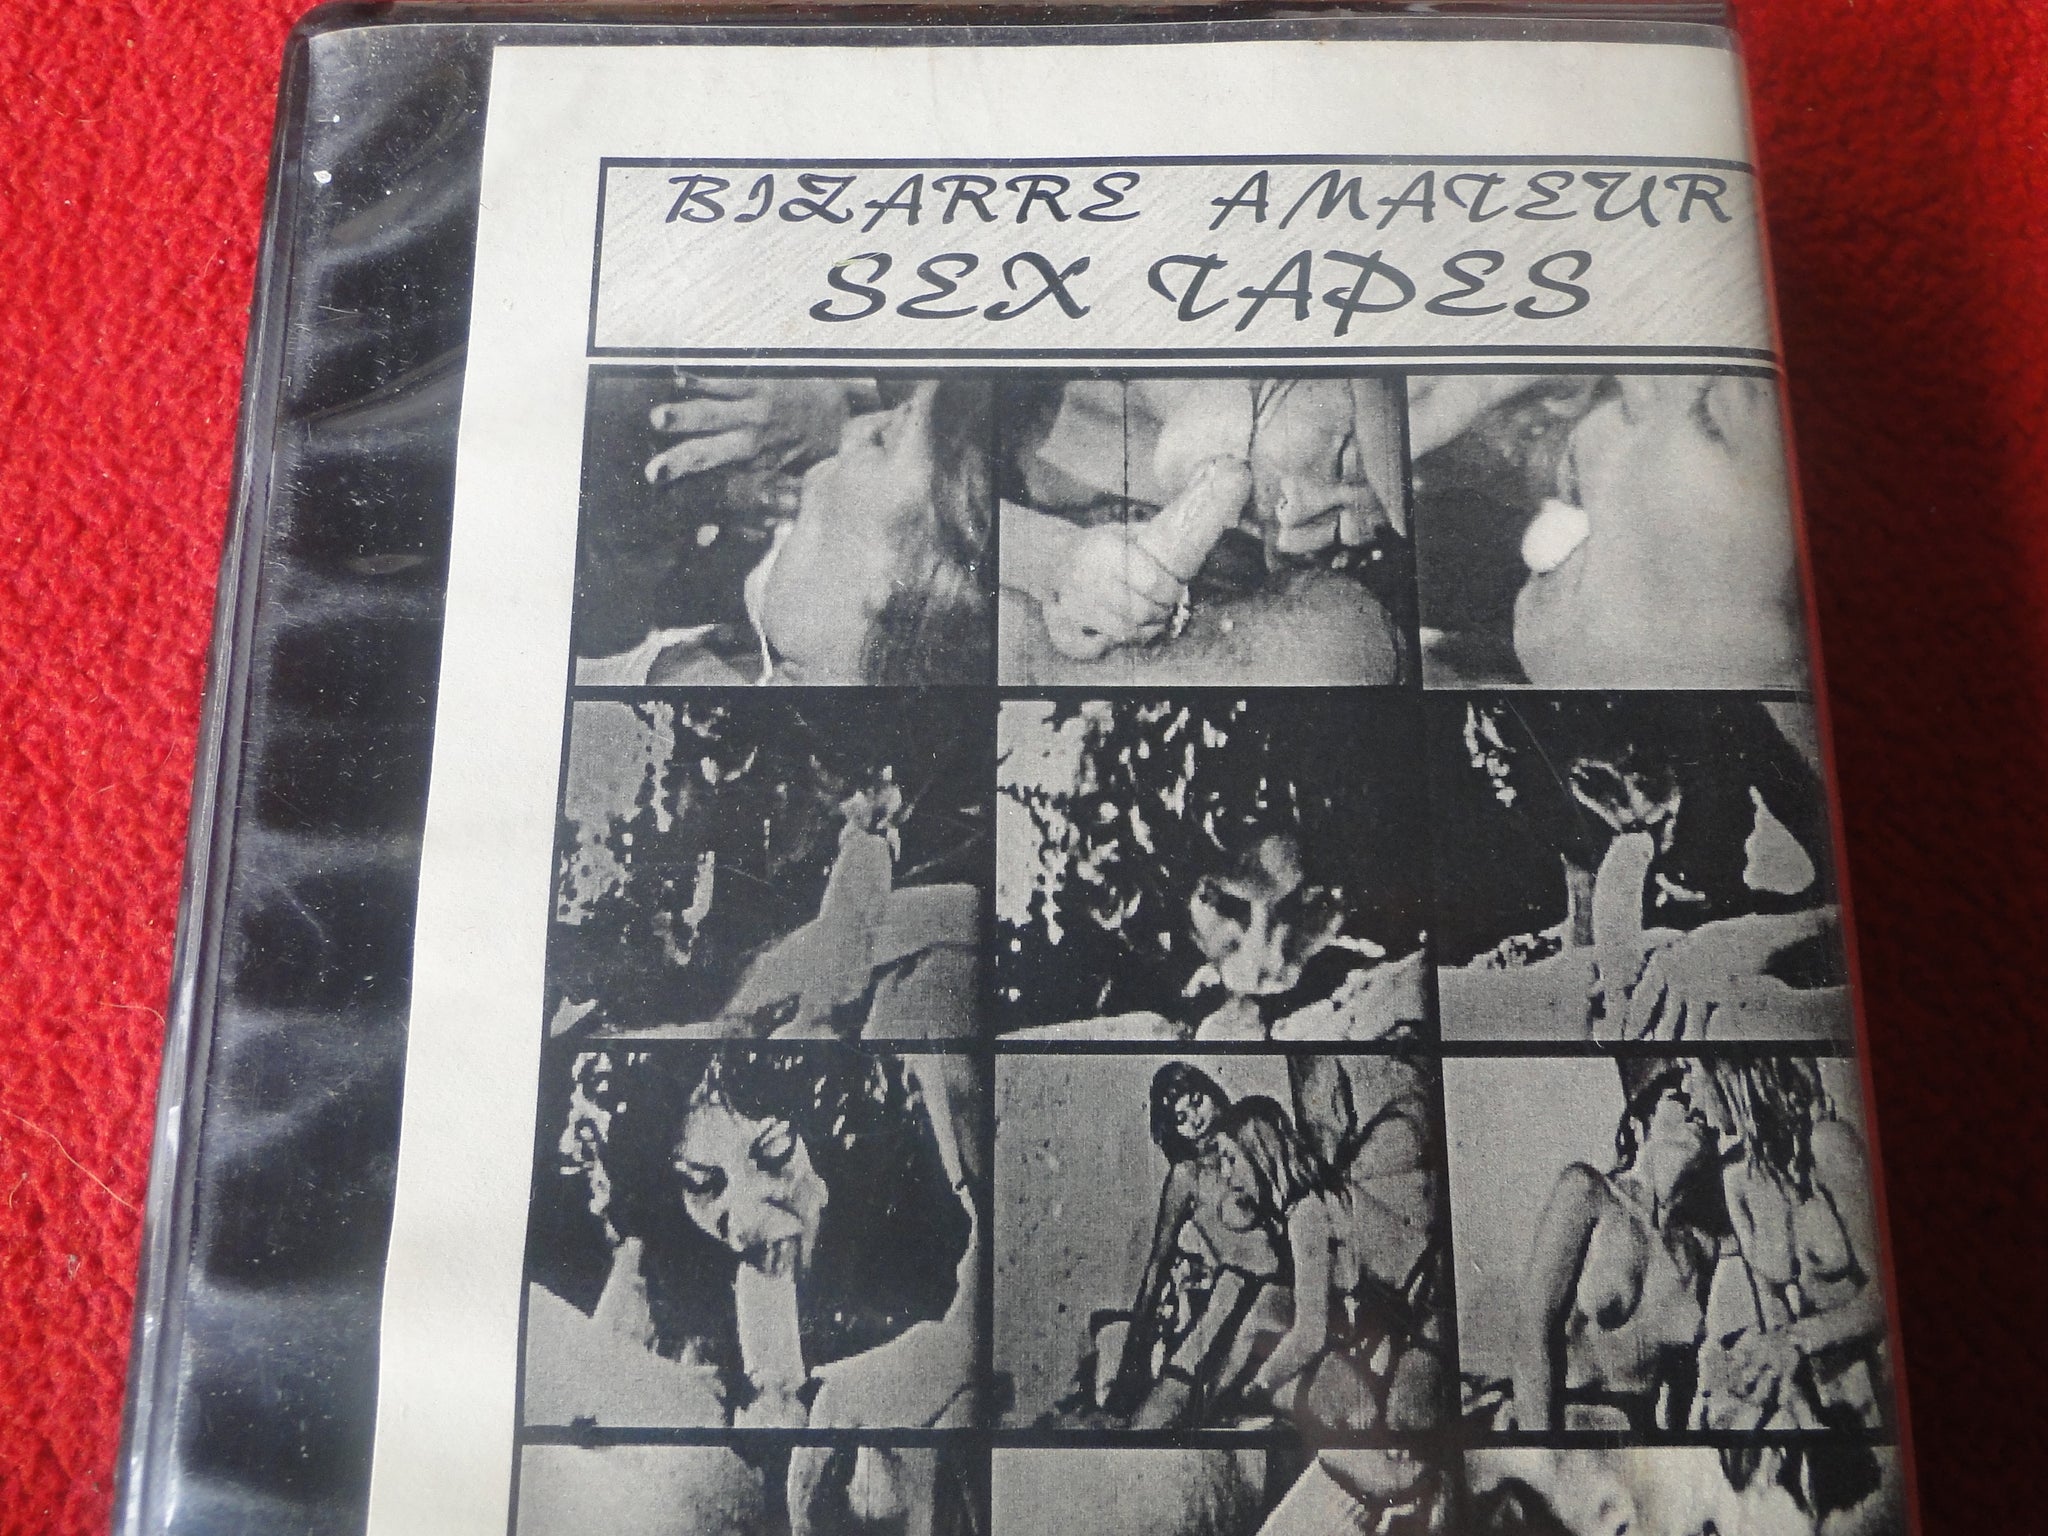 Vintage Adult XXX VHS Porn Tape Bizarre Amateur Sex Tapes Classic Stag